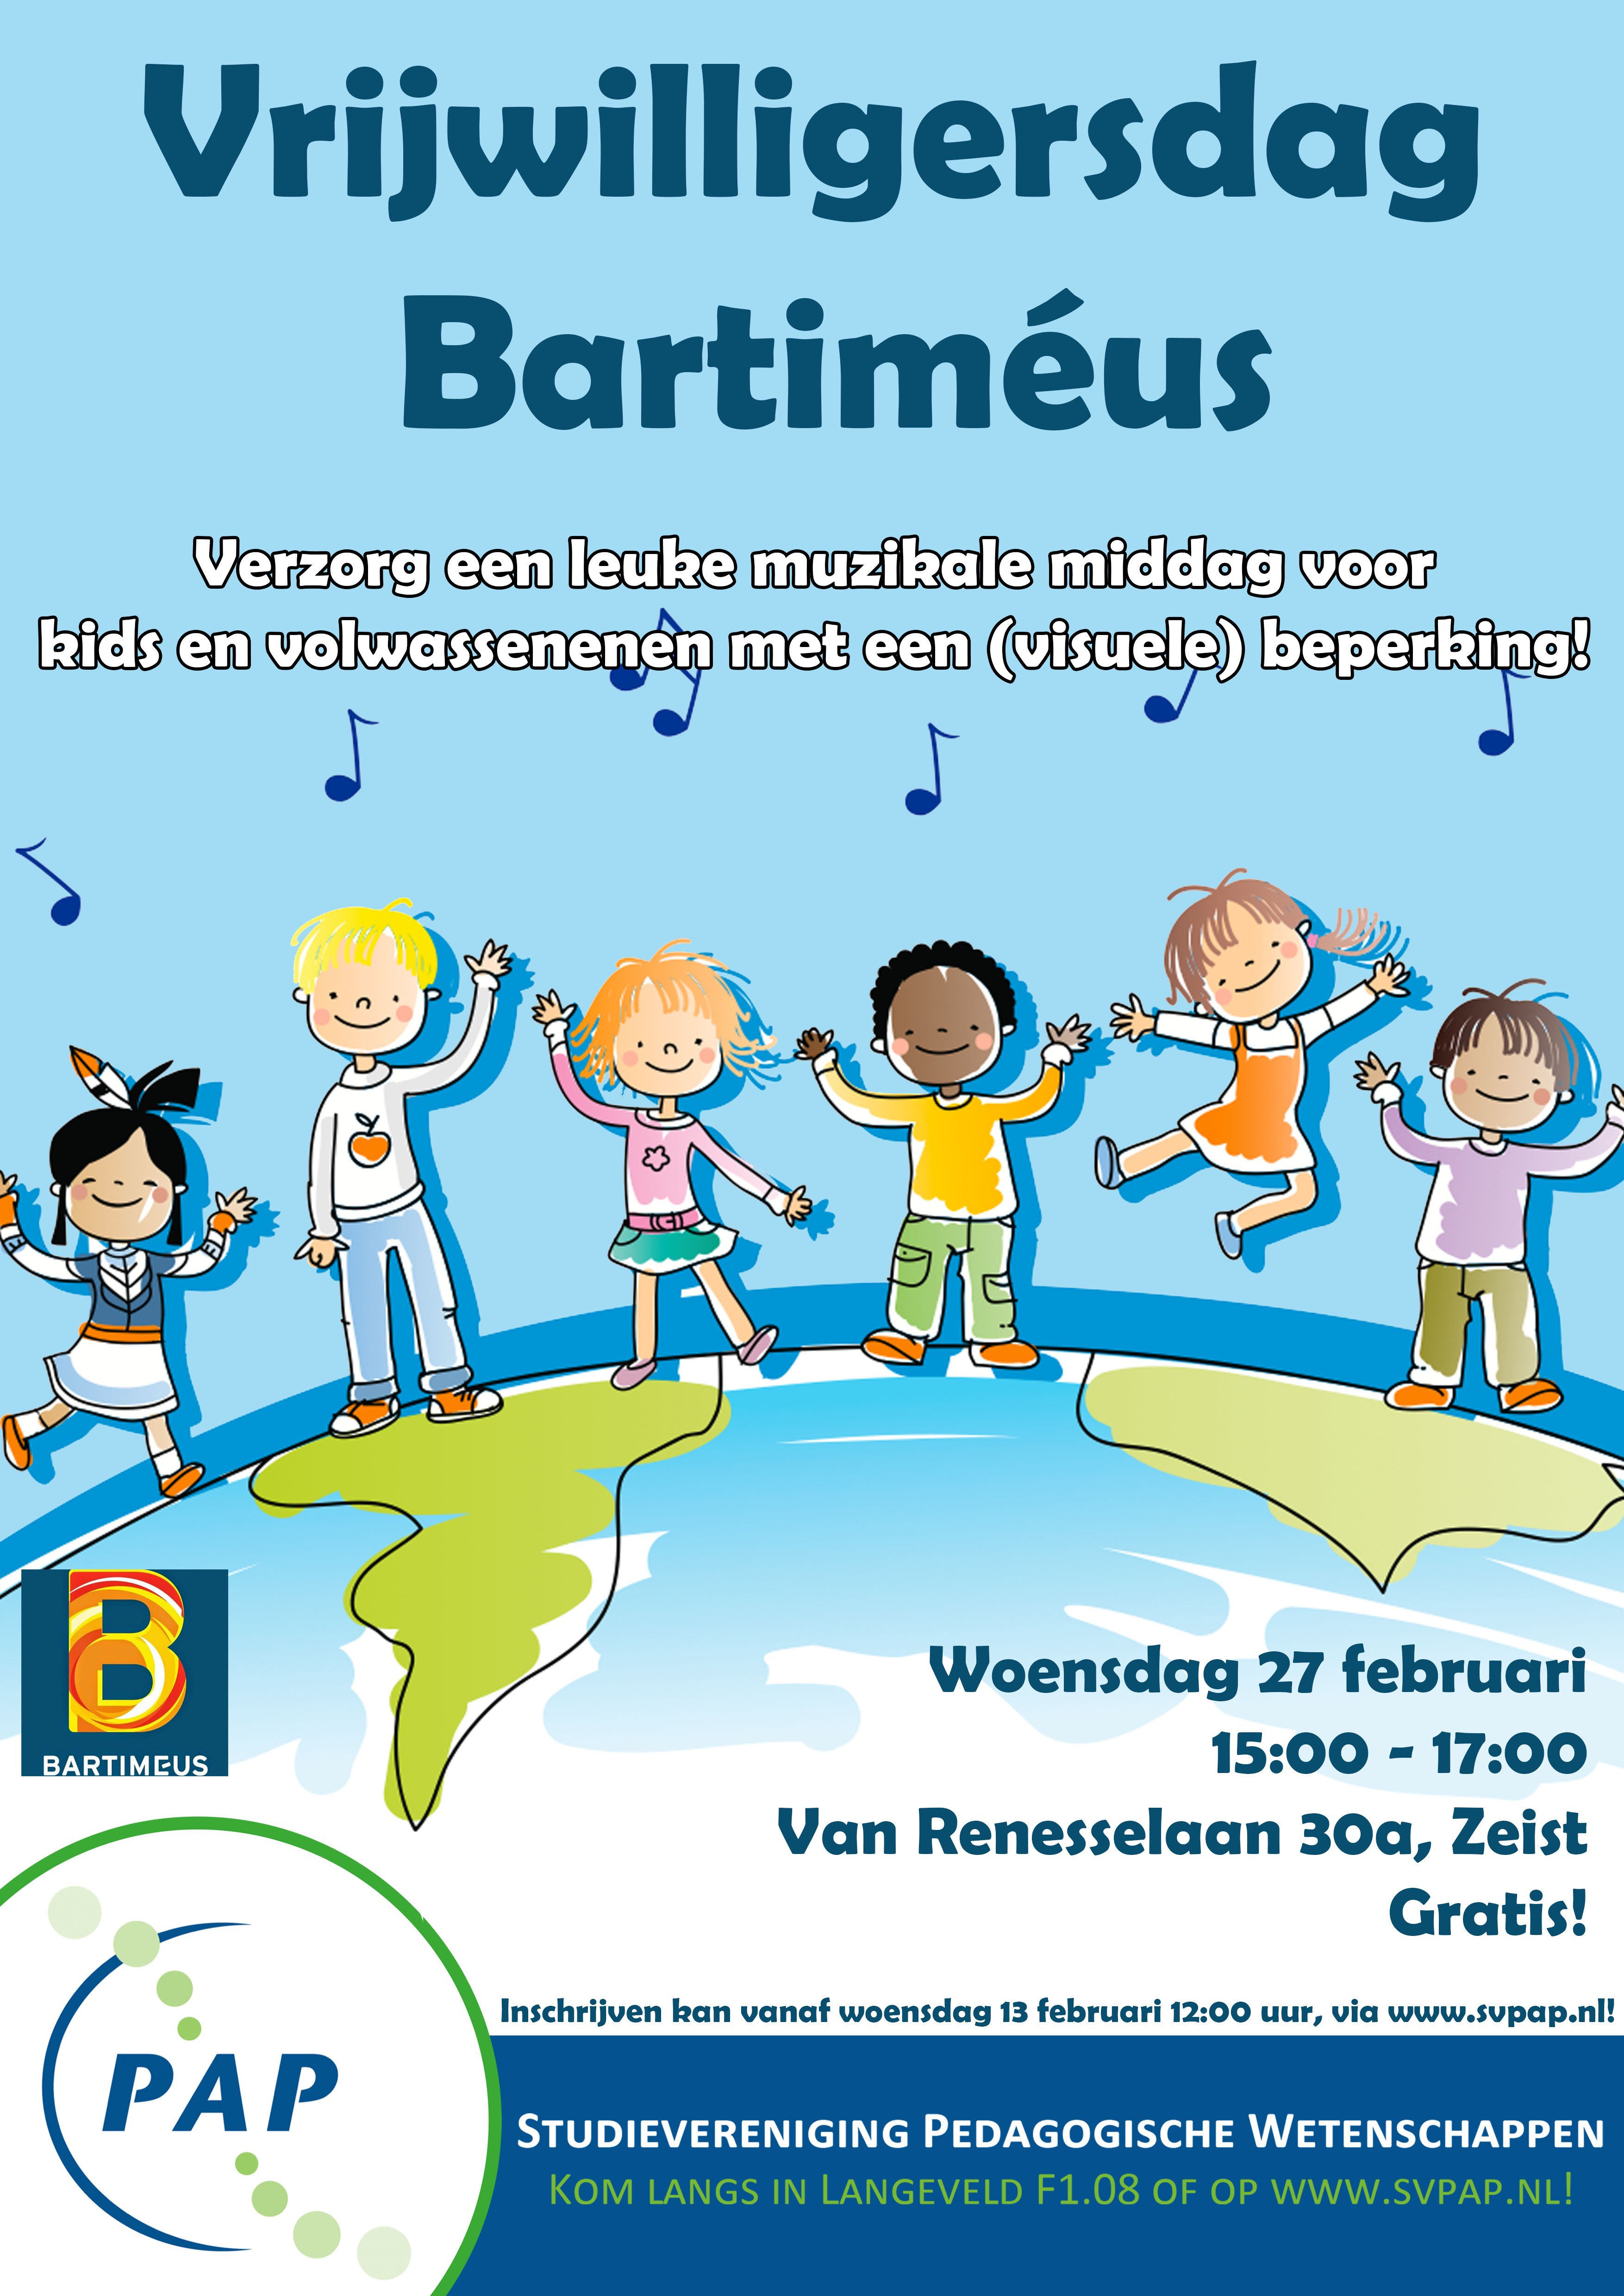 Vrijwilligersdag Bartiméus